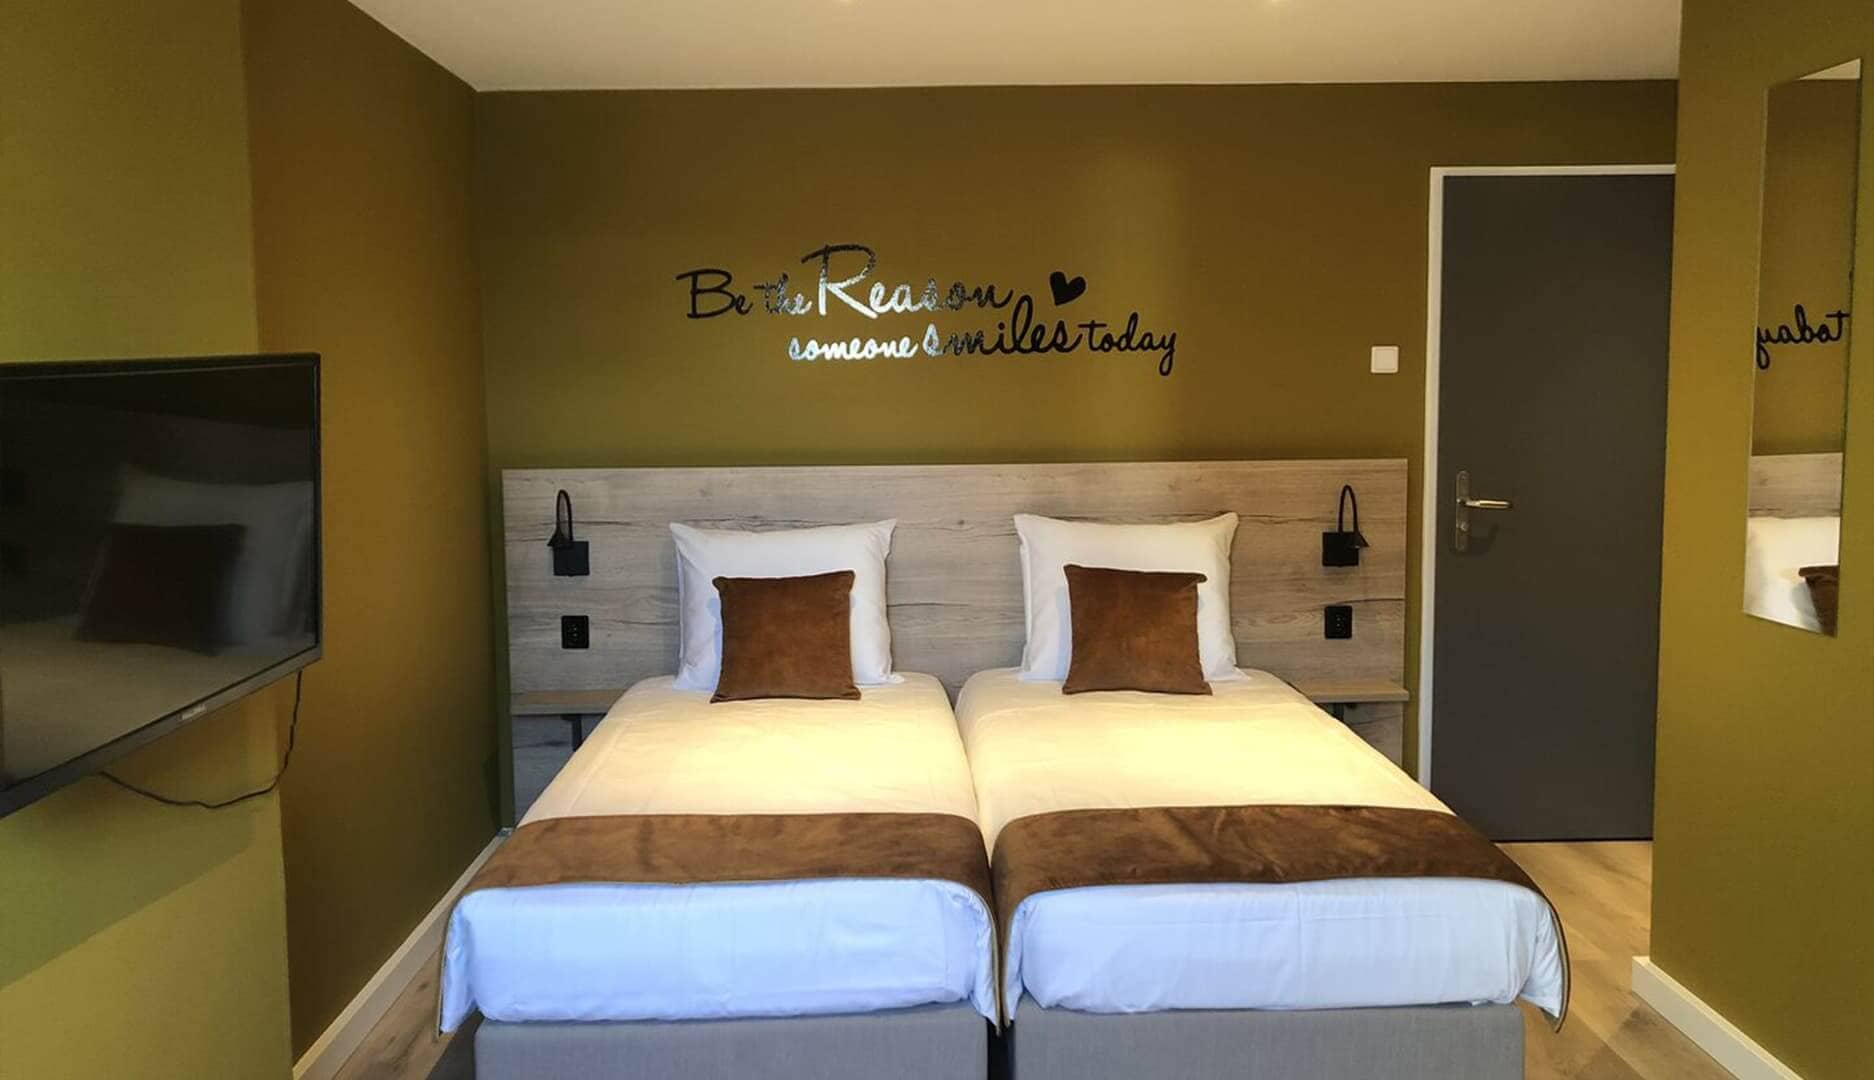 Overzichtsfoto Comfort tweepersoonskamer deluxe bij het hotel in drenthe